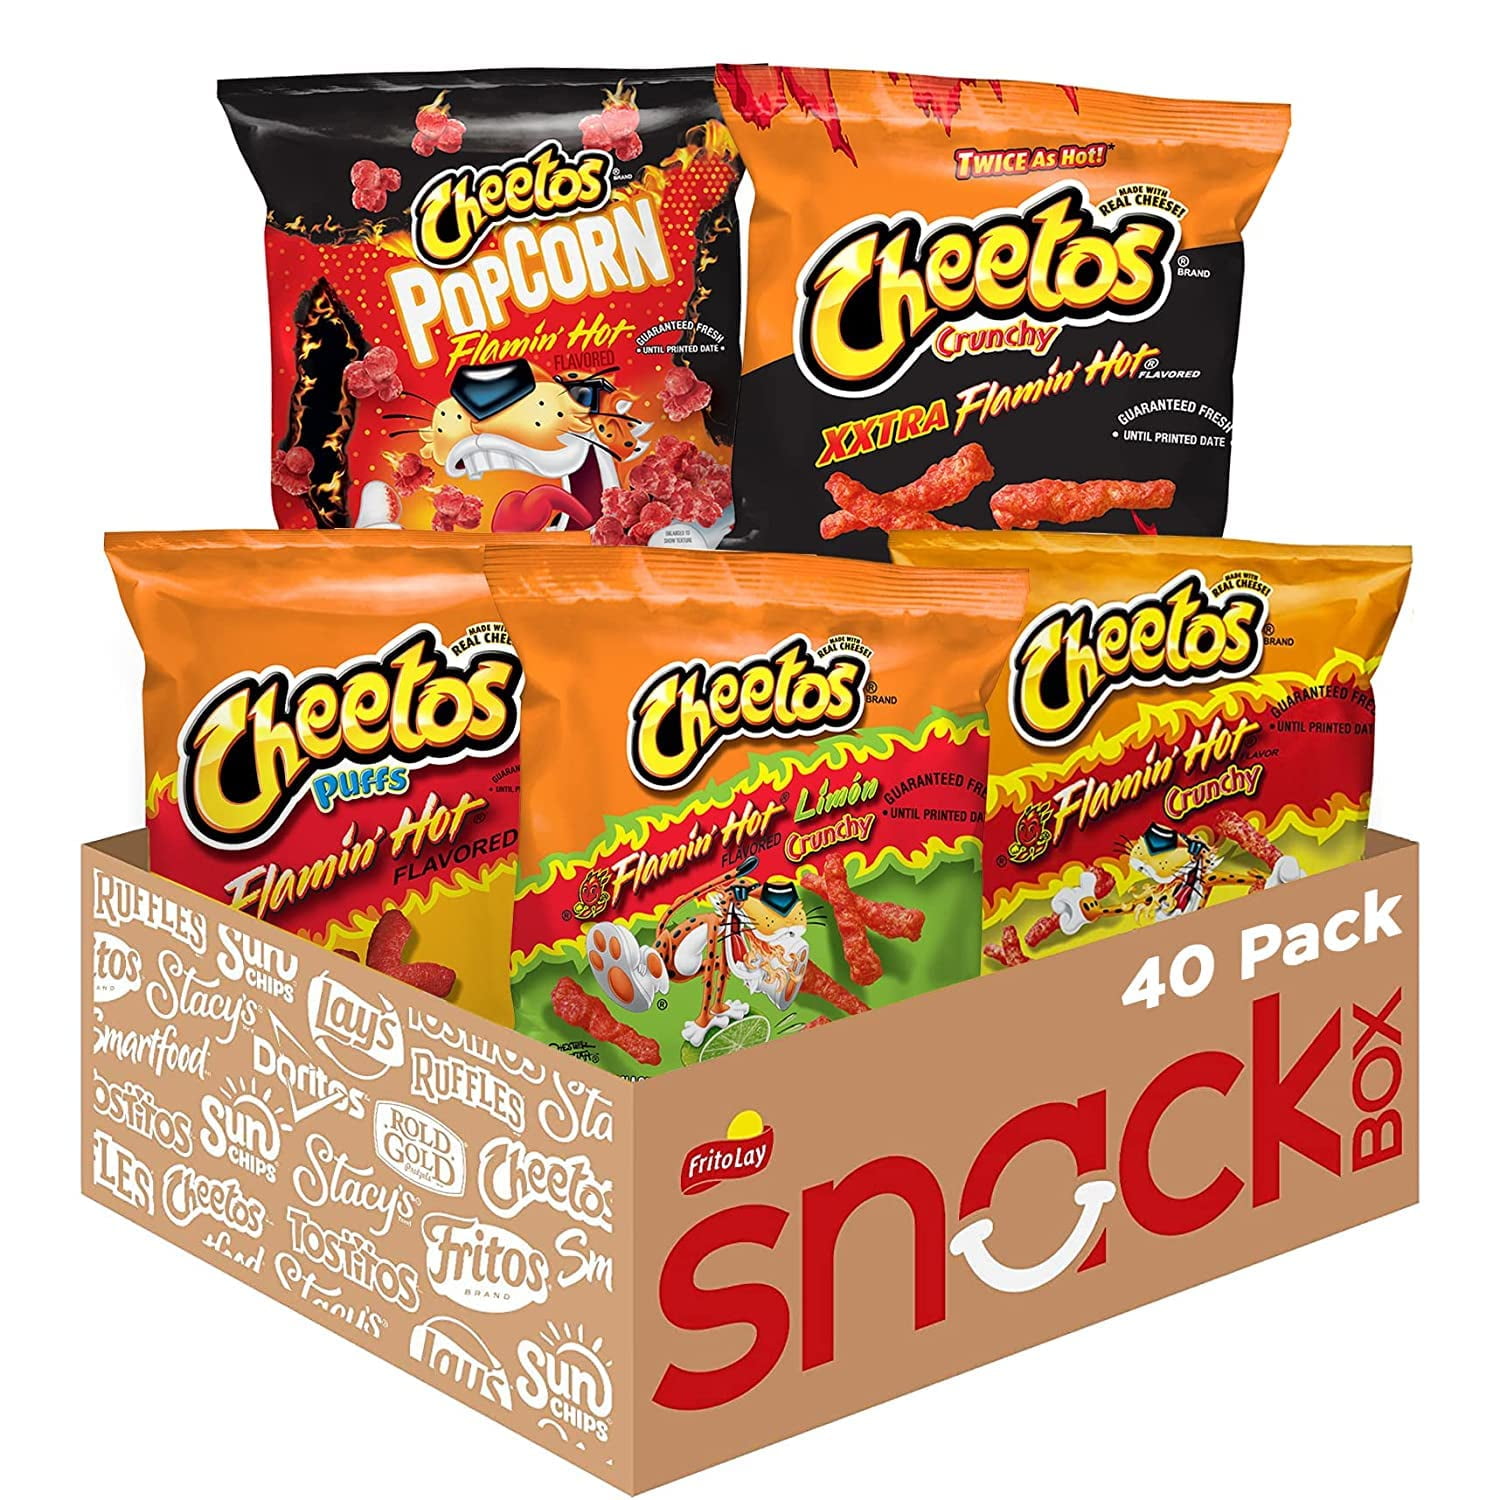 Buy Cheetos Flamin Hot Variety Pack, 40 Count at Ubuy Bangladesh